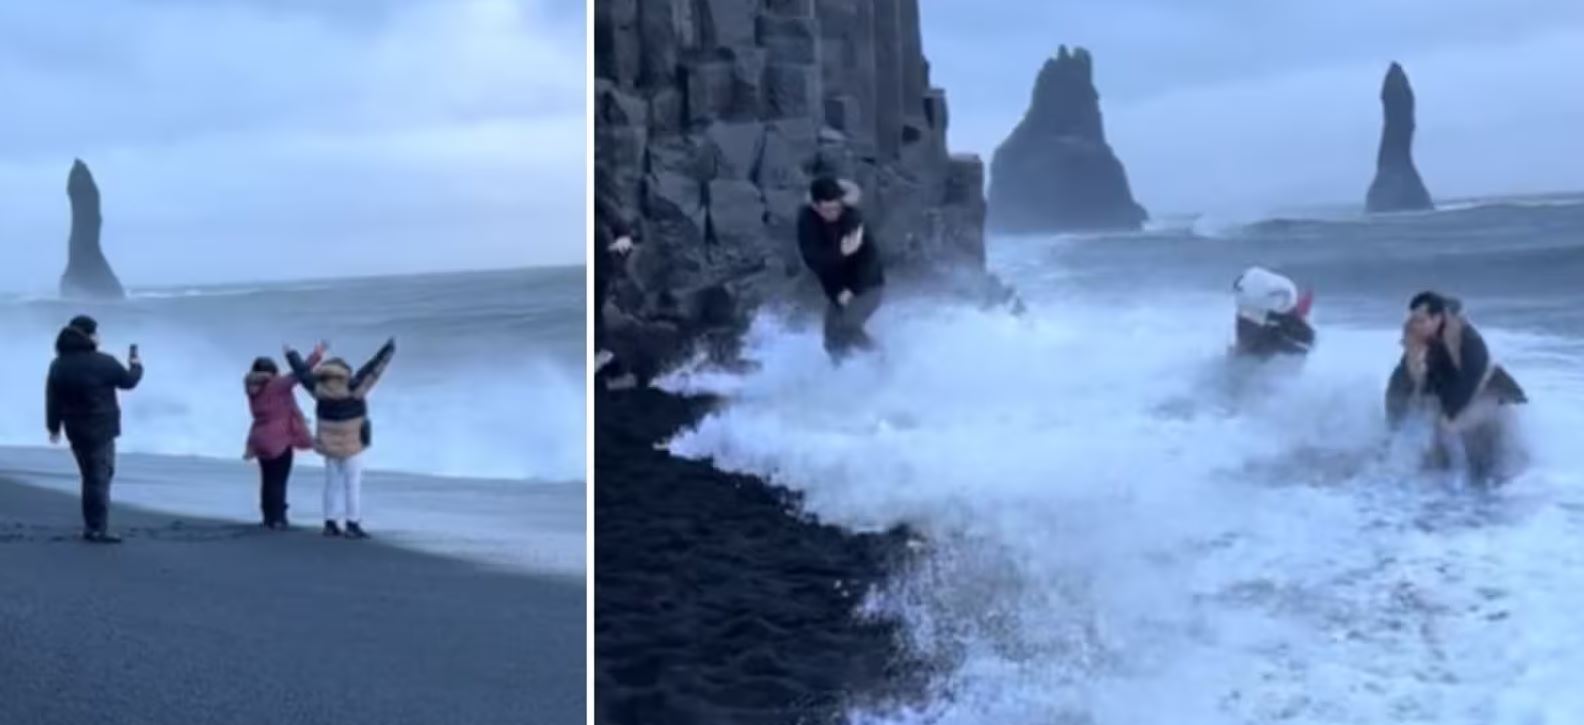 Βίντεο: Τουρίστες παραλίγο να παρασυρθούν στη θάλασσα ενώ προσπαθούν να βγάλουν φωτογραφία στην πιο επικίνδυνη παραλία της Ισλανδίας